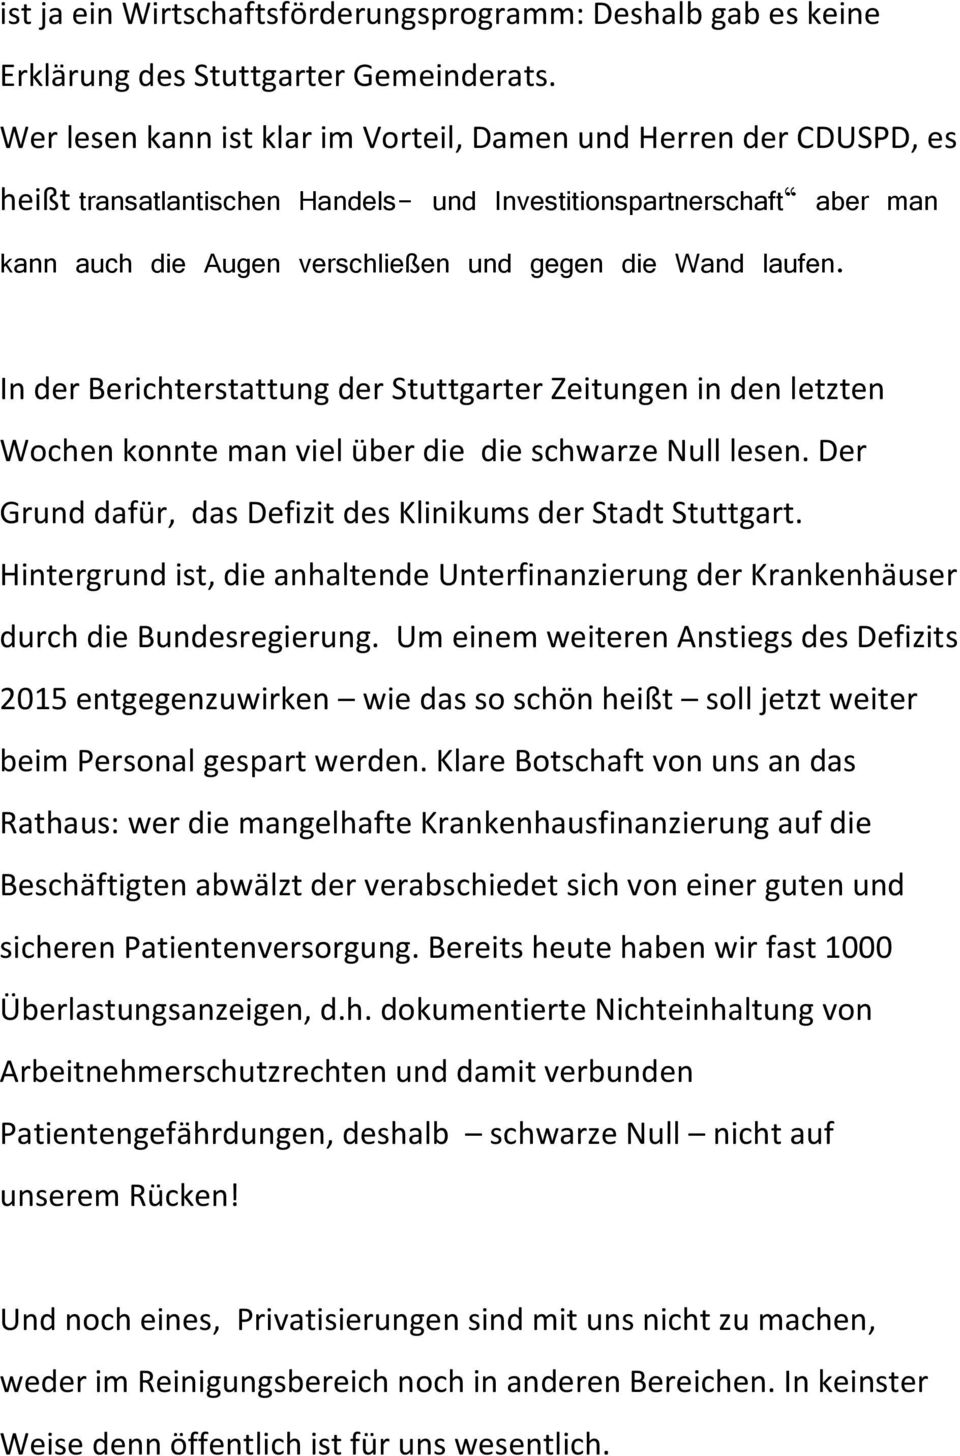 In der Berichterstattung der Stuttgarter Zeitungen in den letzten Wochen konnte man viel über die die schwarze Null lesen. Der Grund dafür, das Defizit des Klinikums der Stadt Stuttgart.